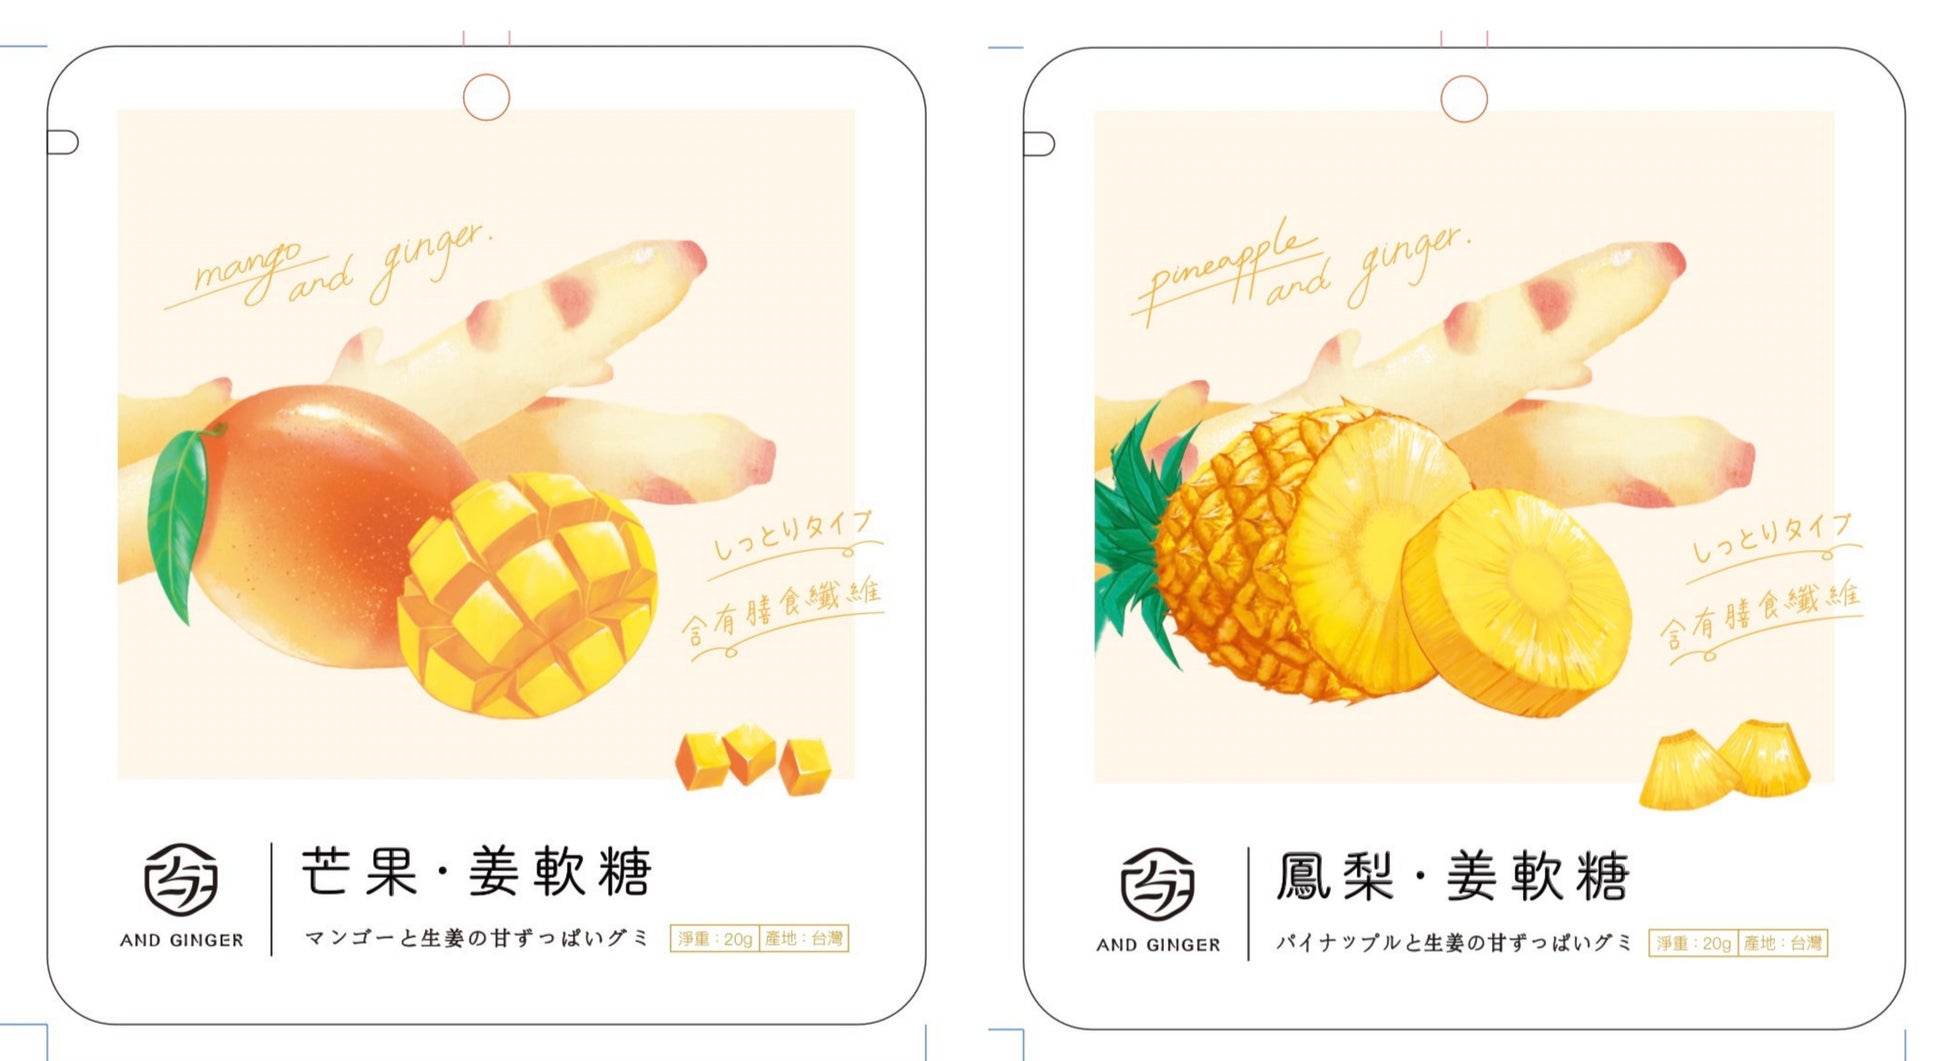 大好評の台湾ブランド「ユジャン」の生姜グミに 新味、パイナップルとマンゴーが登場！